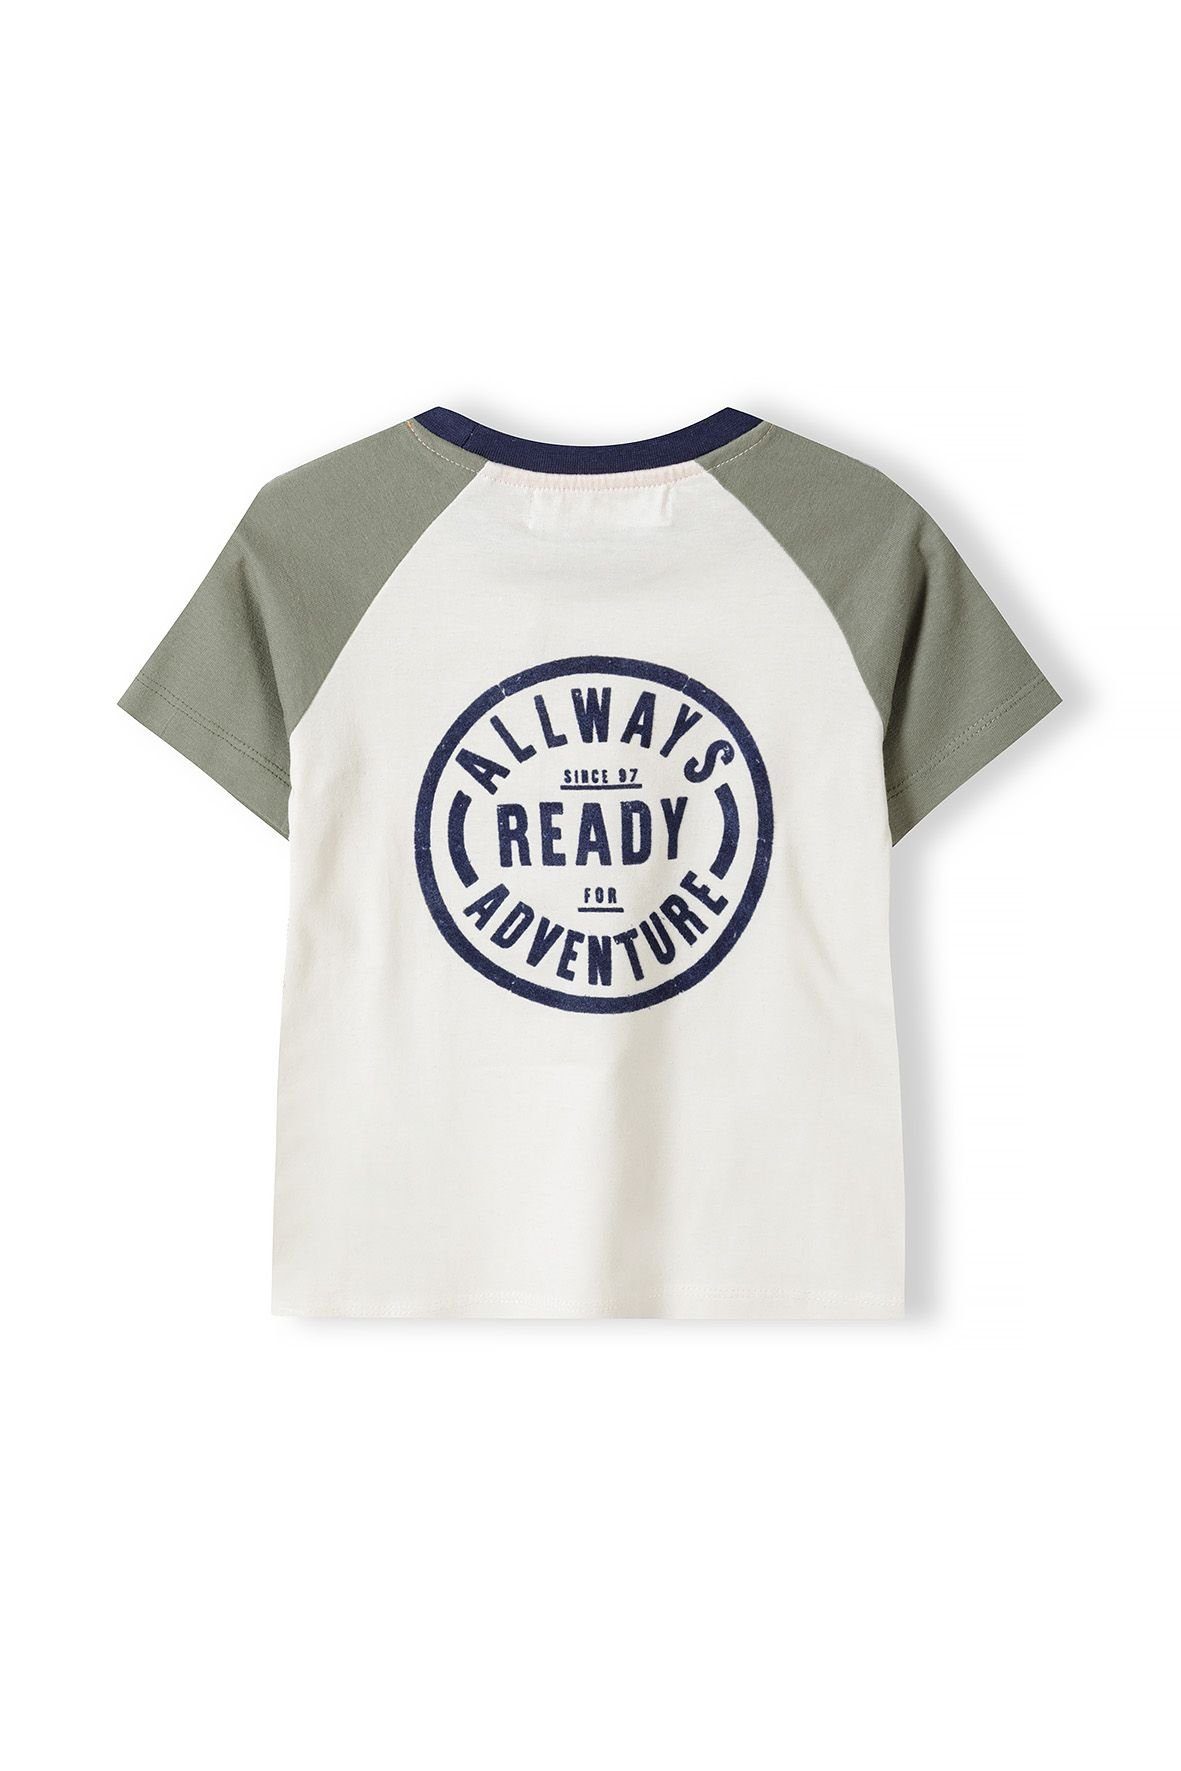 T-Shirt Baumwolle aus (3y-14y) T-Shirt MINOTI